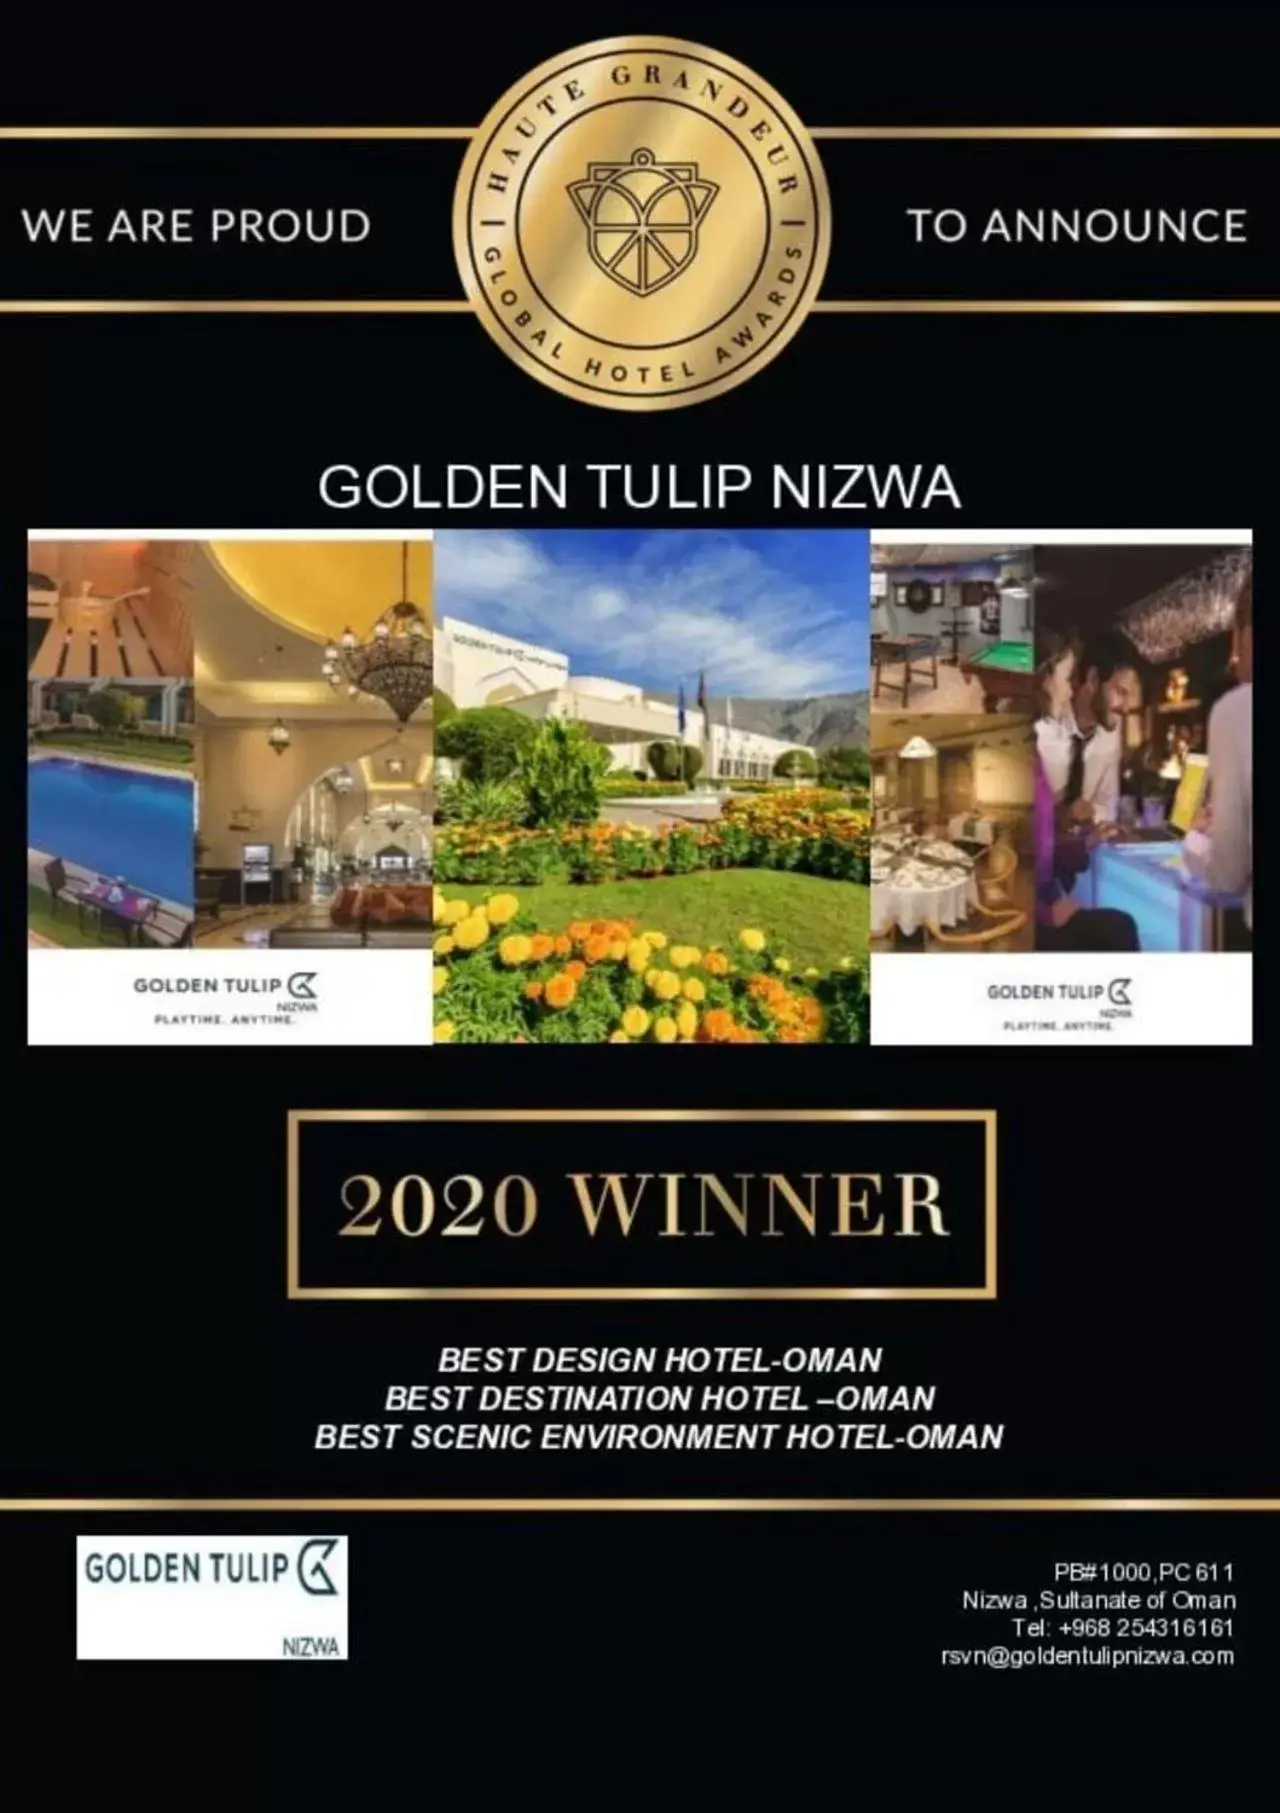 Property logo or sign in Golden Tulip Nizwa Hotel